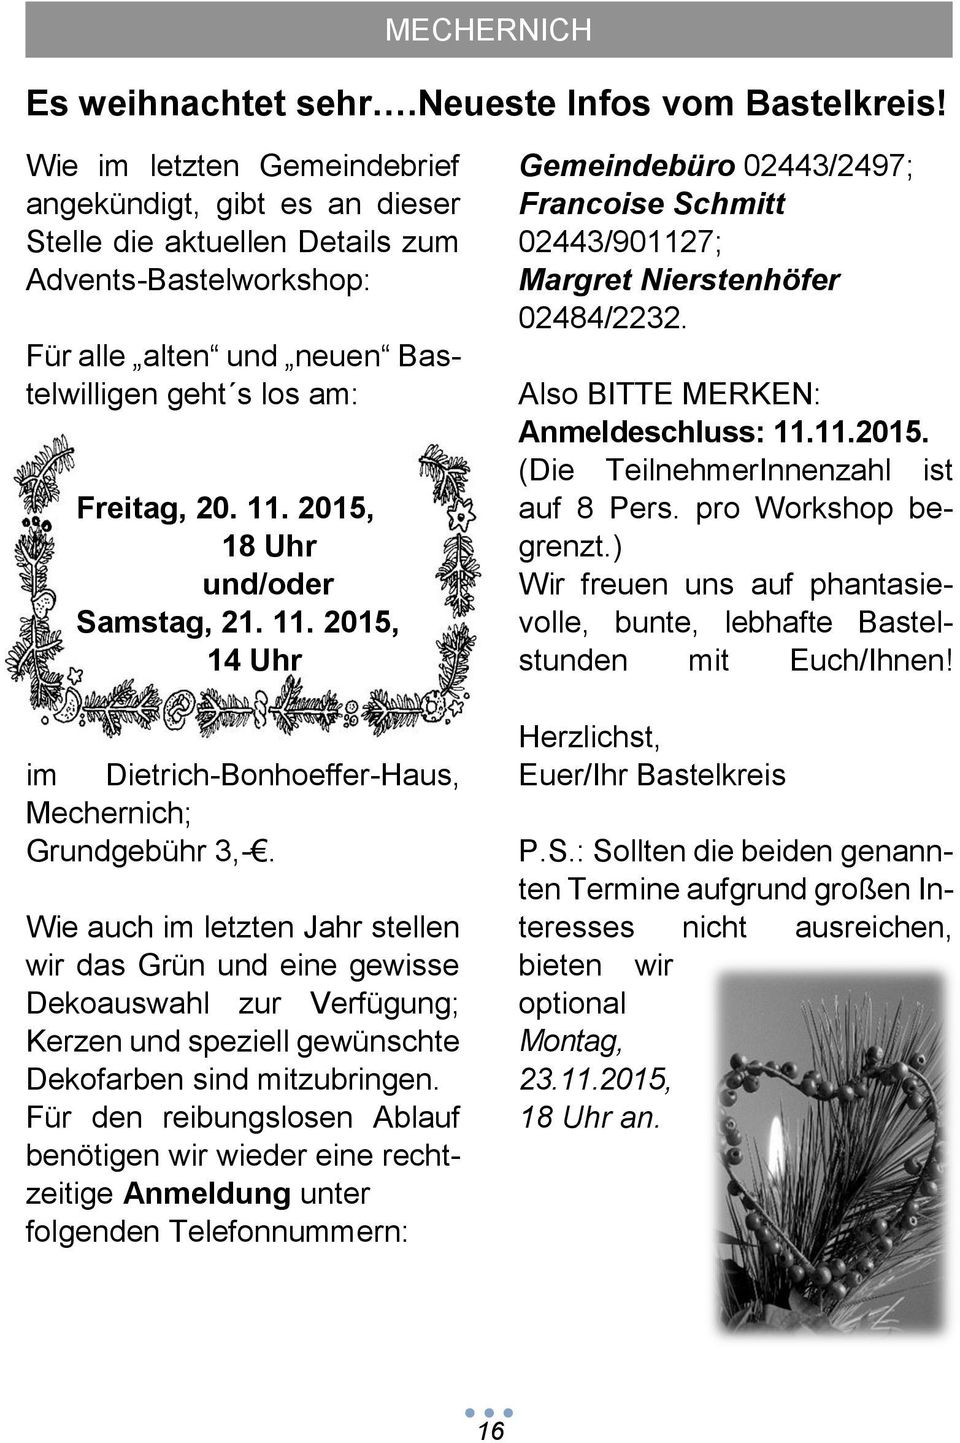 2015, 18 Uhr und/oder Samstag, 21. 11. 2015, 14 Uhr im Dietrich-Bonhoeffer-Haus, Mechernich; Grundgebühr 3,-.